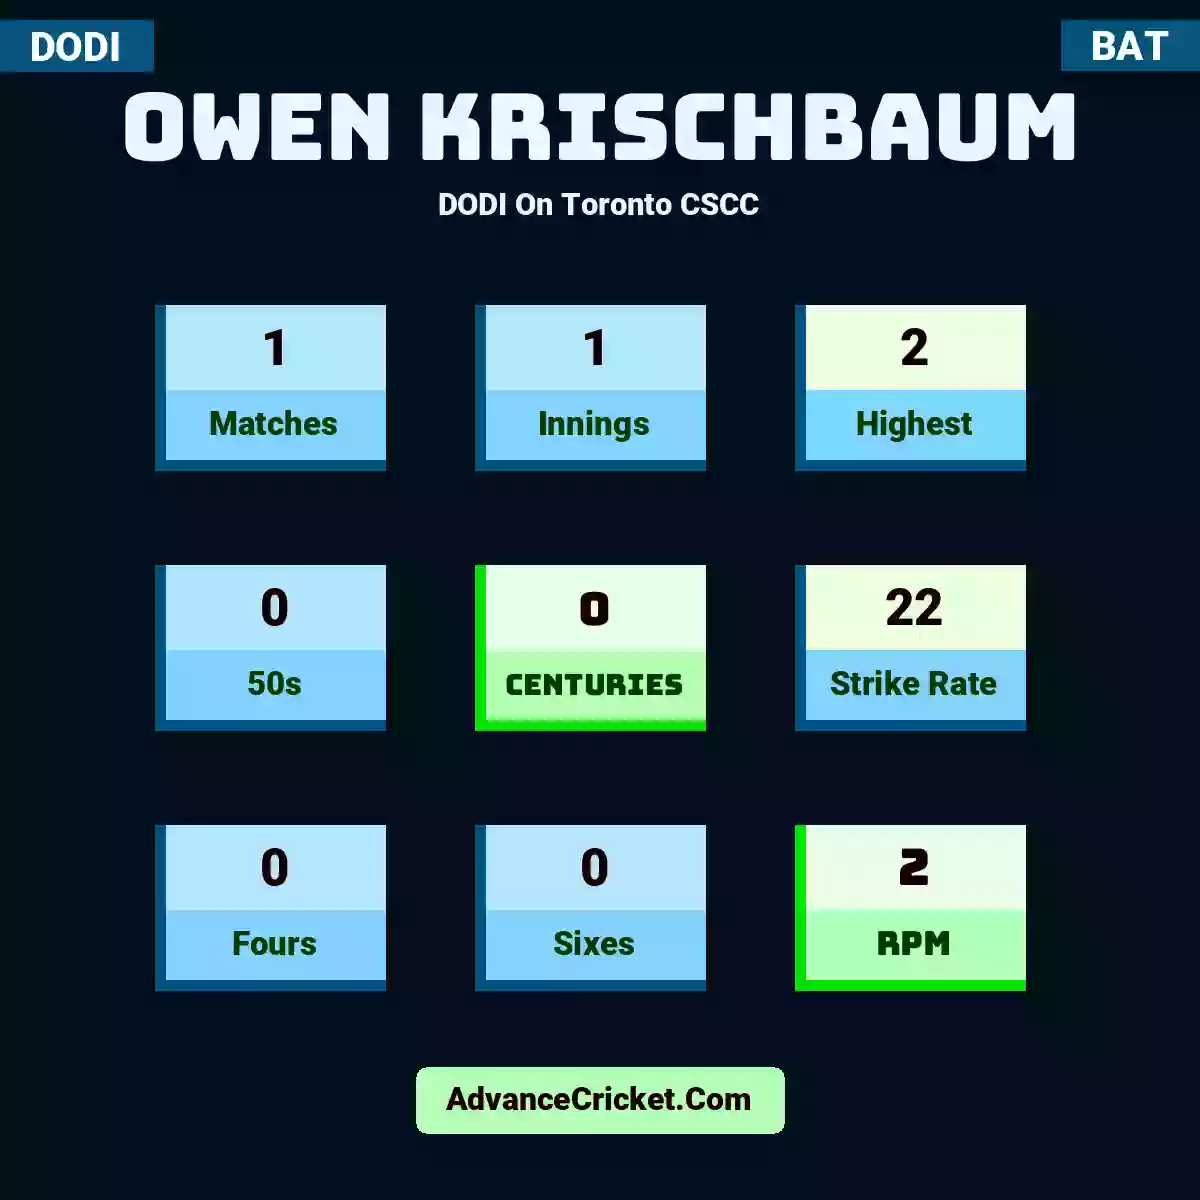 Owen Krischbaum DODI  On Toronto CSCC, Owen Krischbaum played 1 matches, scored 2 runs as highest, 0 half-centuries, and 0 centuries, with a strike rate of 22. O.Krischbaum hit 0 fours and 0 sixes, with an RPM of 2.